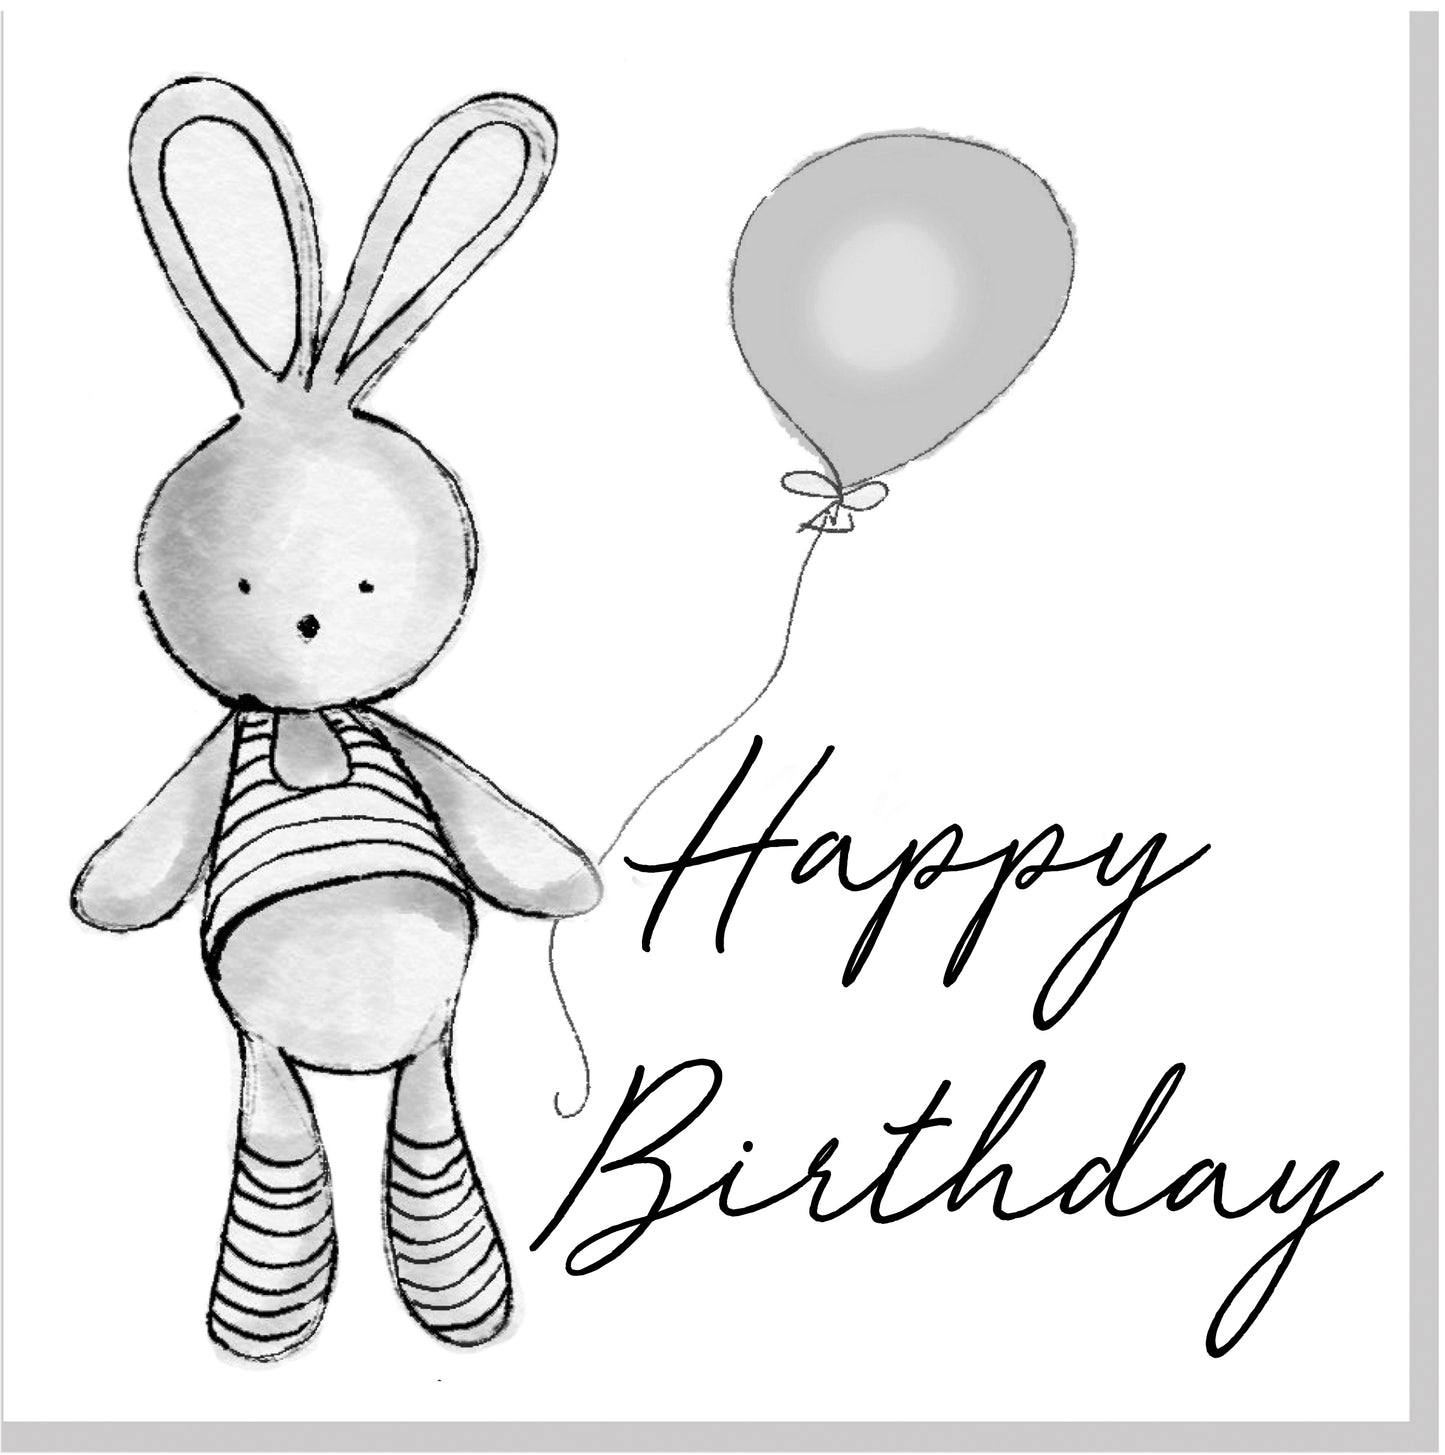 Happy Birthday Bunny Balloon square card